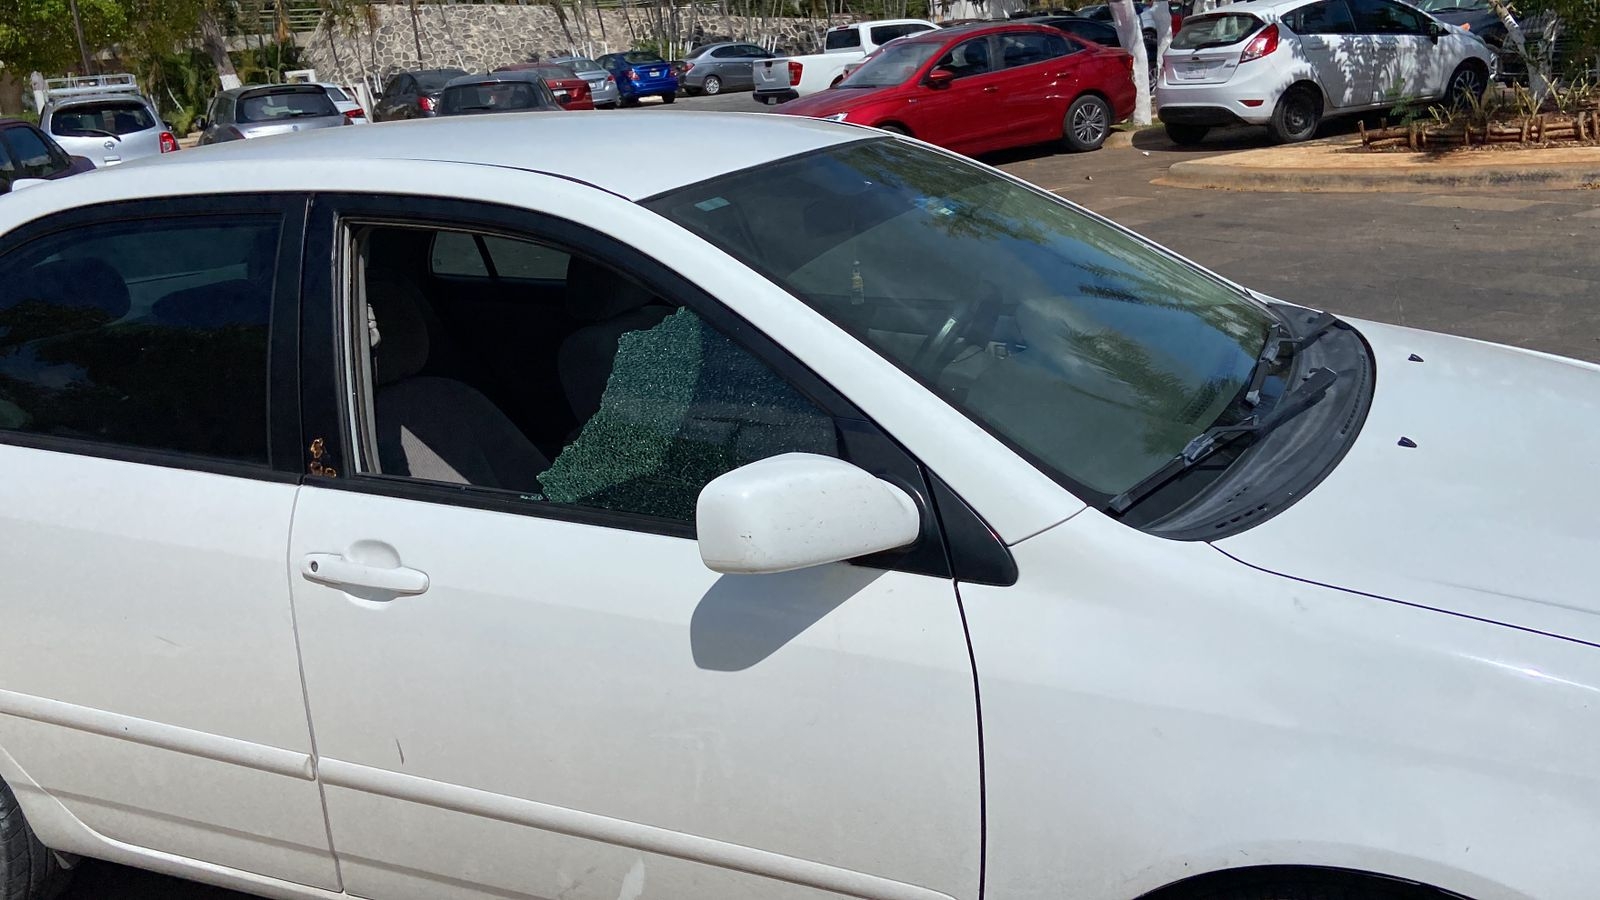 Sólo el cristal de la ventana del auto fue roto, sin registrar robo de alguna pertenencia